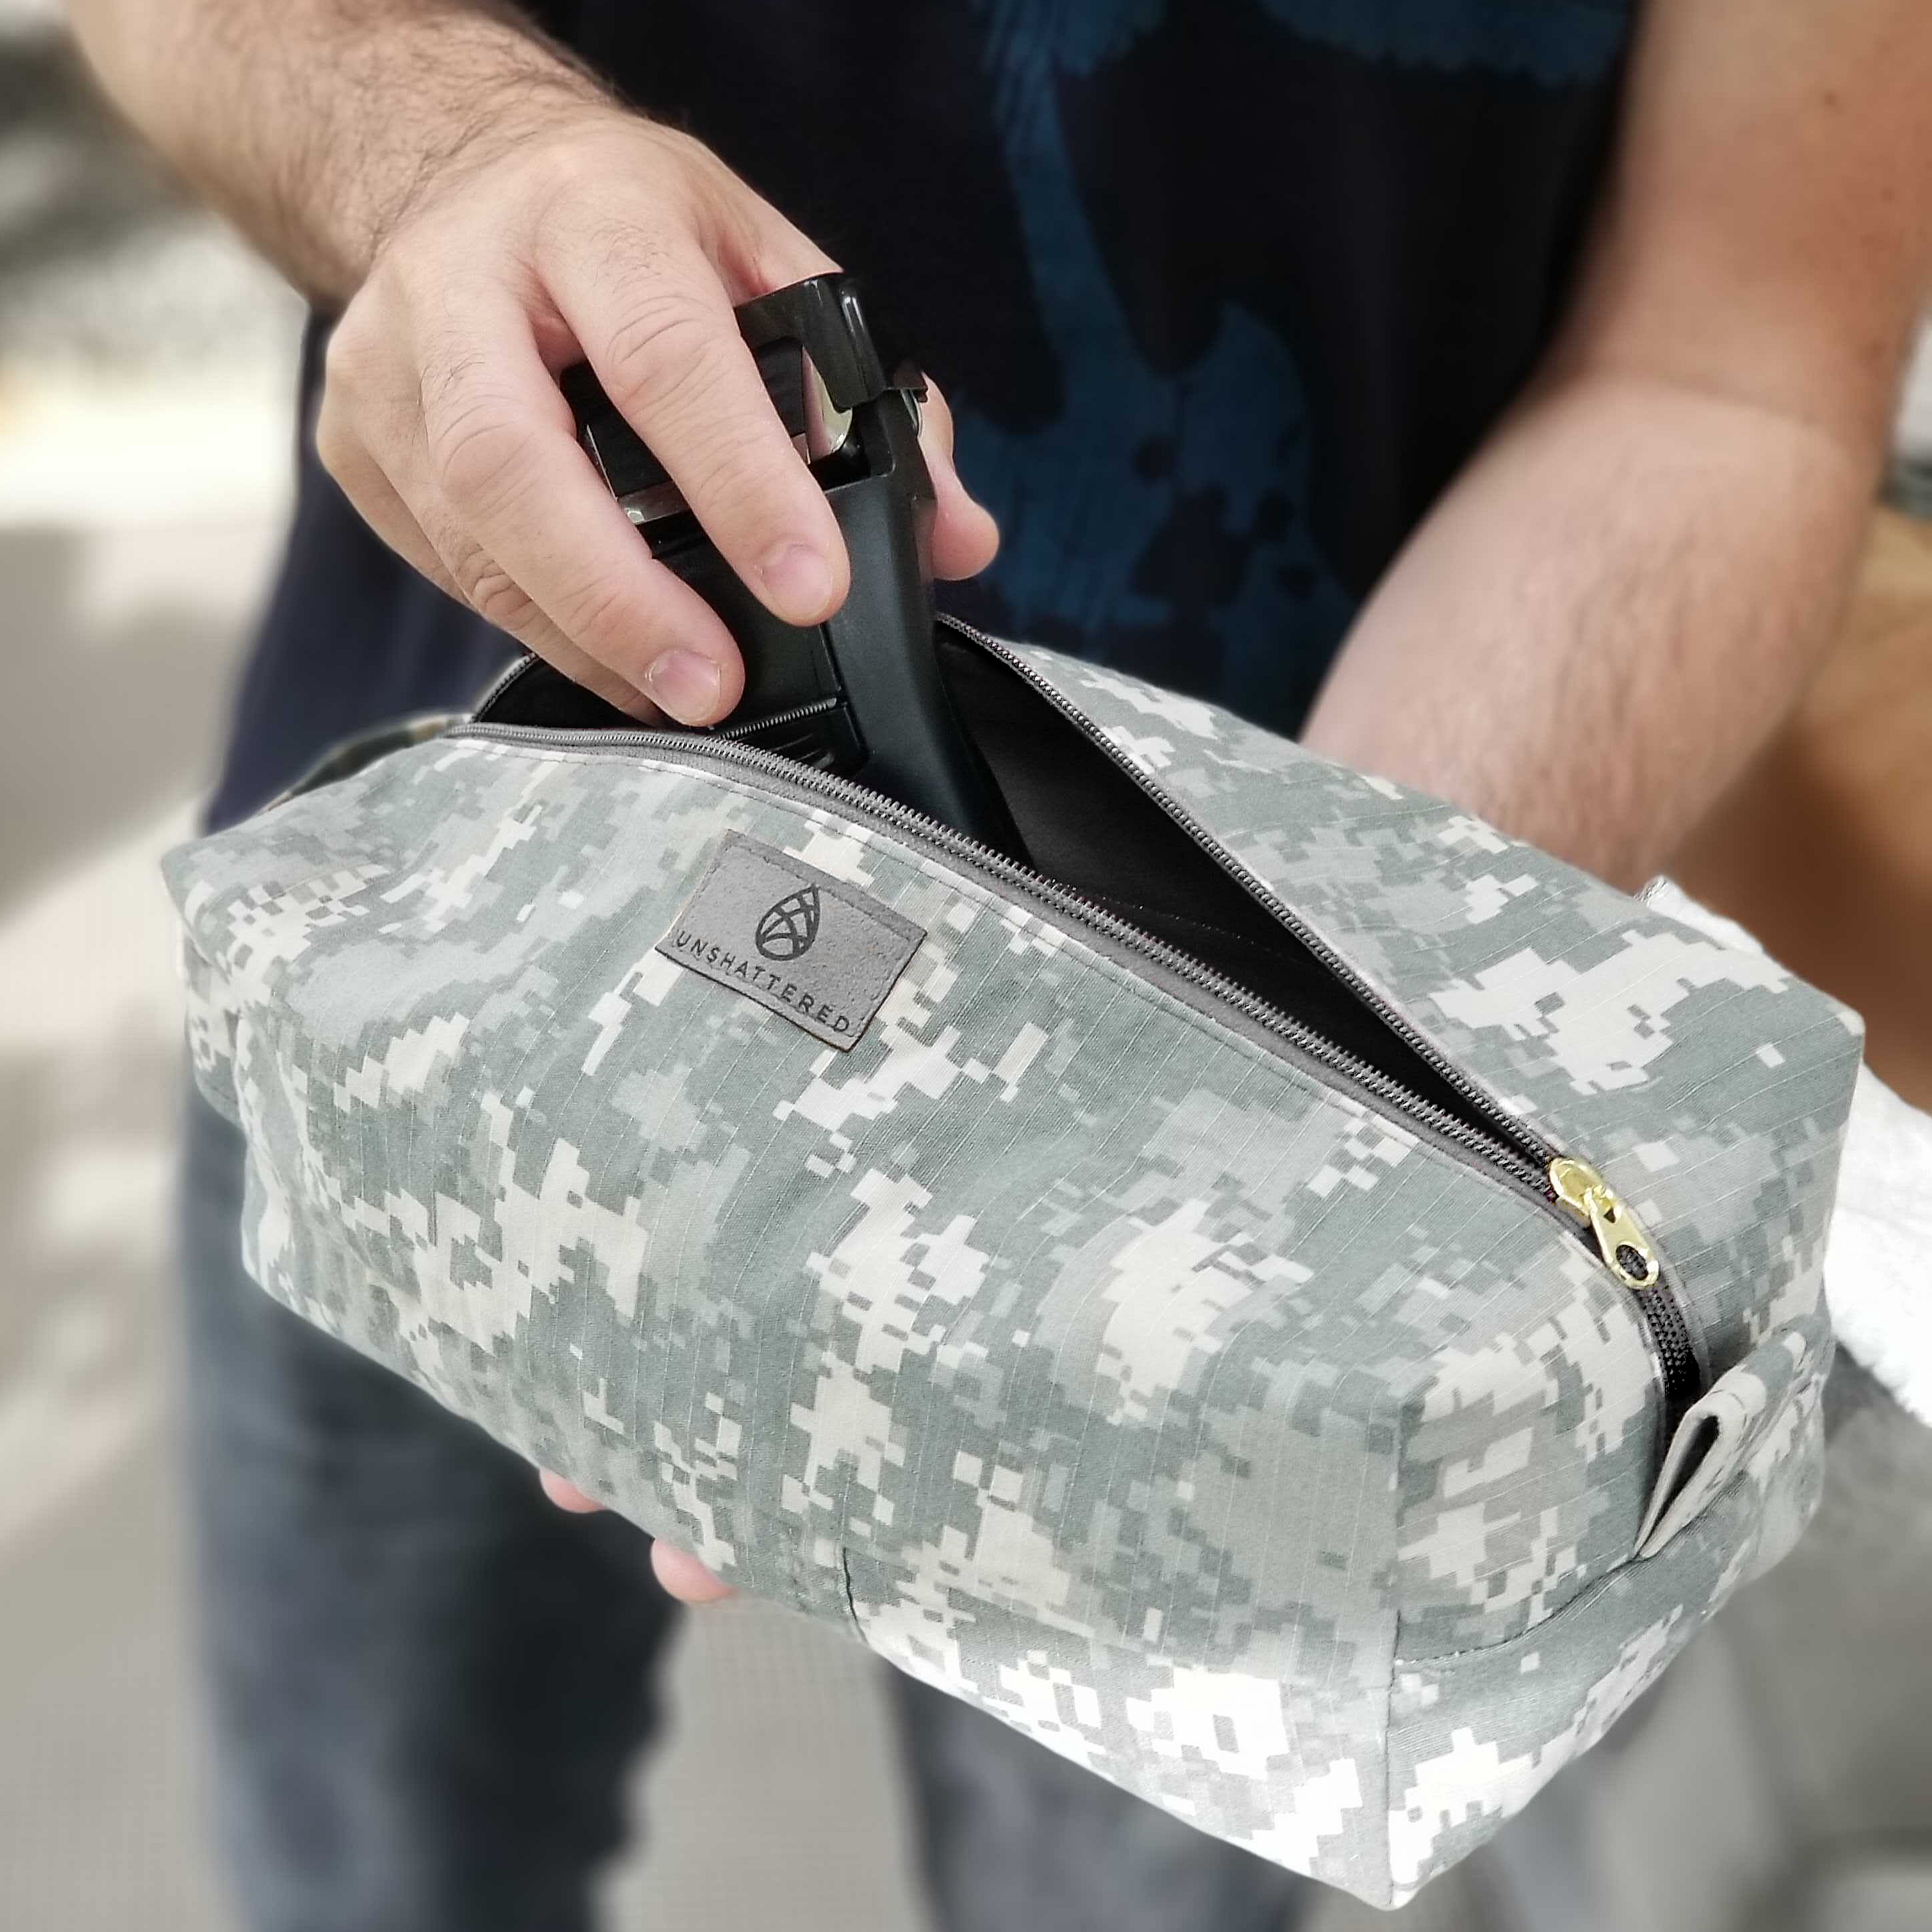 U.S Army Toiletry Kit